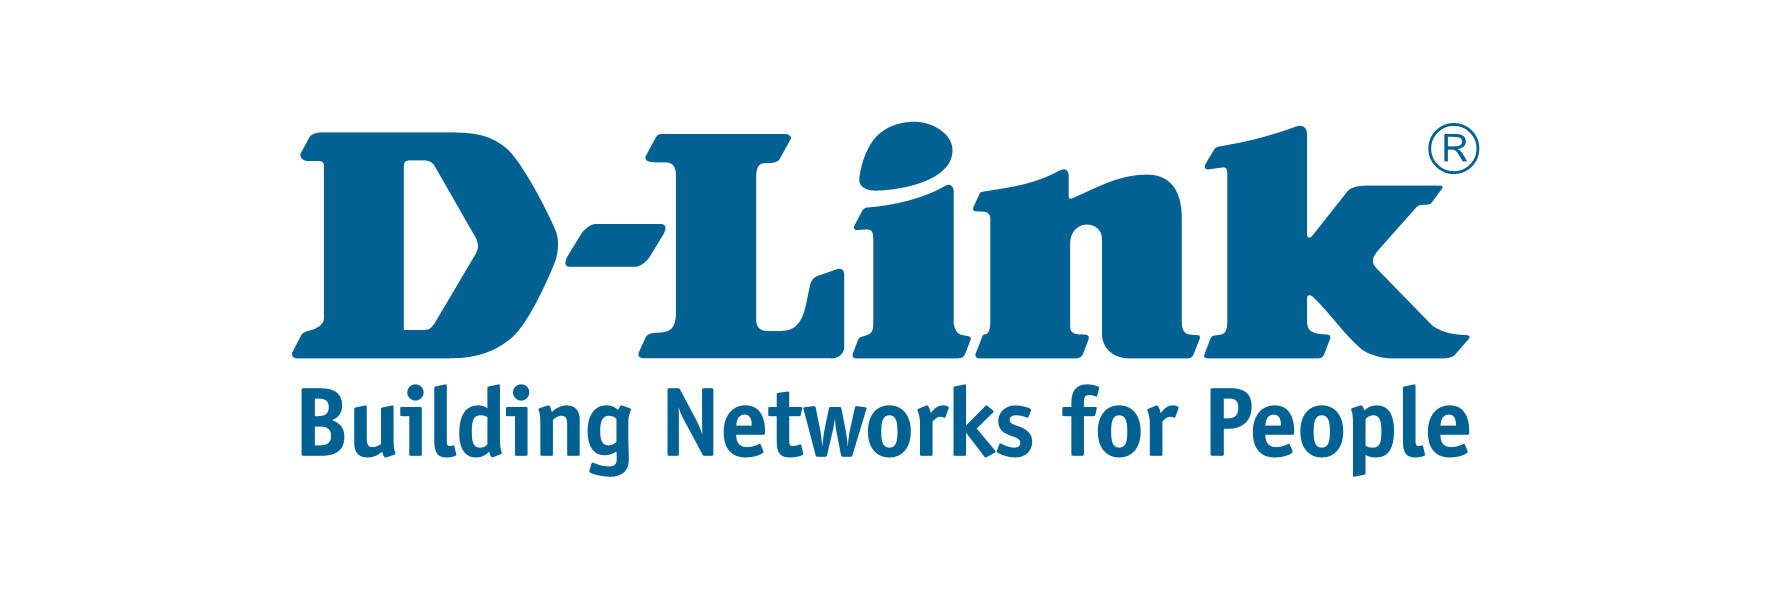 دی لینک - Dlink  در سال 1986 در تایپه با نام داتکس سیستم تاسیس گردید و در سال 1994 نامش به دی لینک - Dlink تغییر کرد . این شرکت با هدف تولید تجهیزات شبکه شروع به فعالیت نمود که امروزه شاهد مصرف بسیار زیاد تجهیزات دی لینک - Dlink در ایران و کشورهای دیگر هستیم .